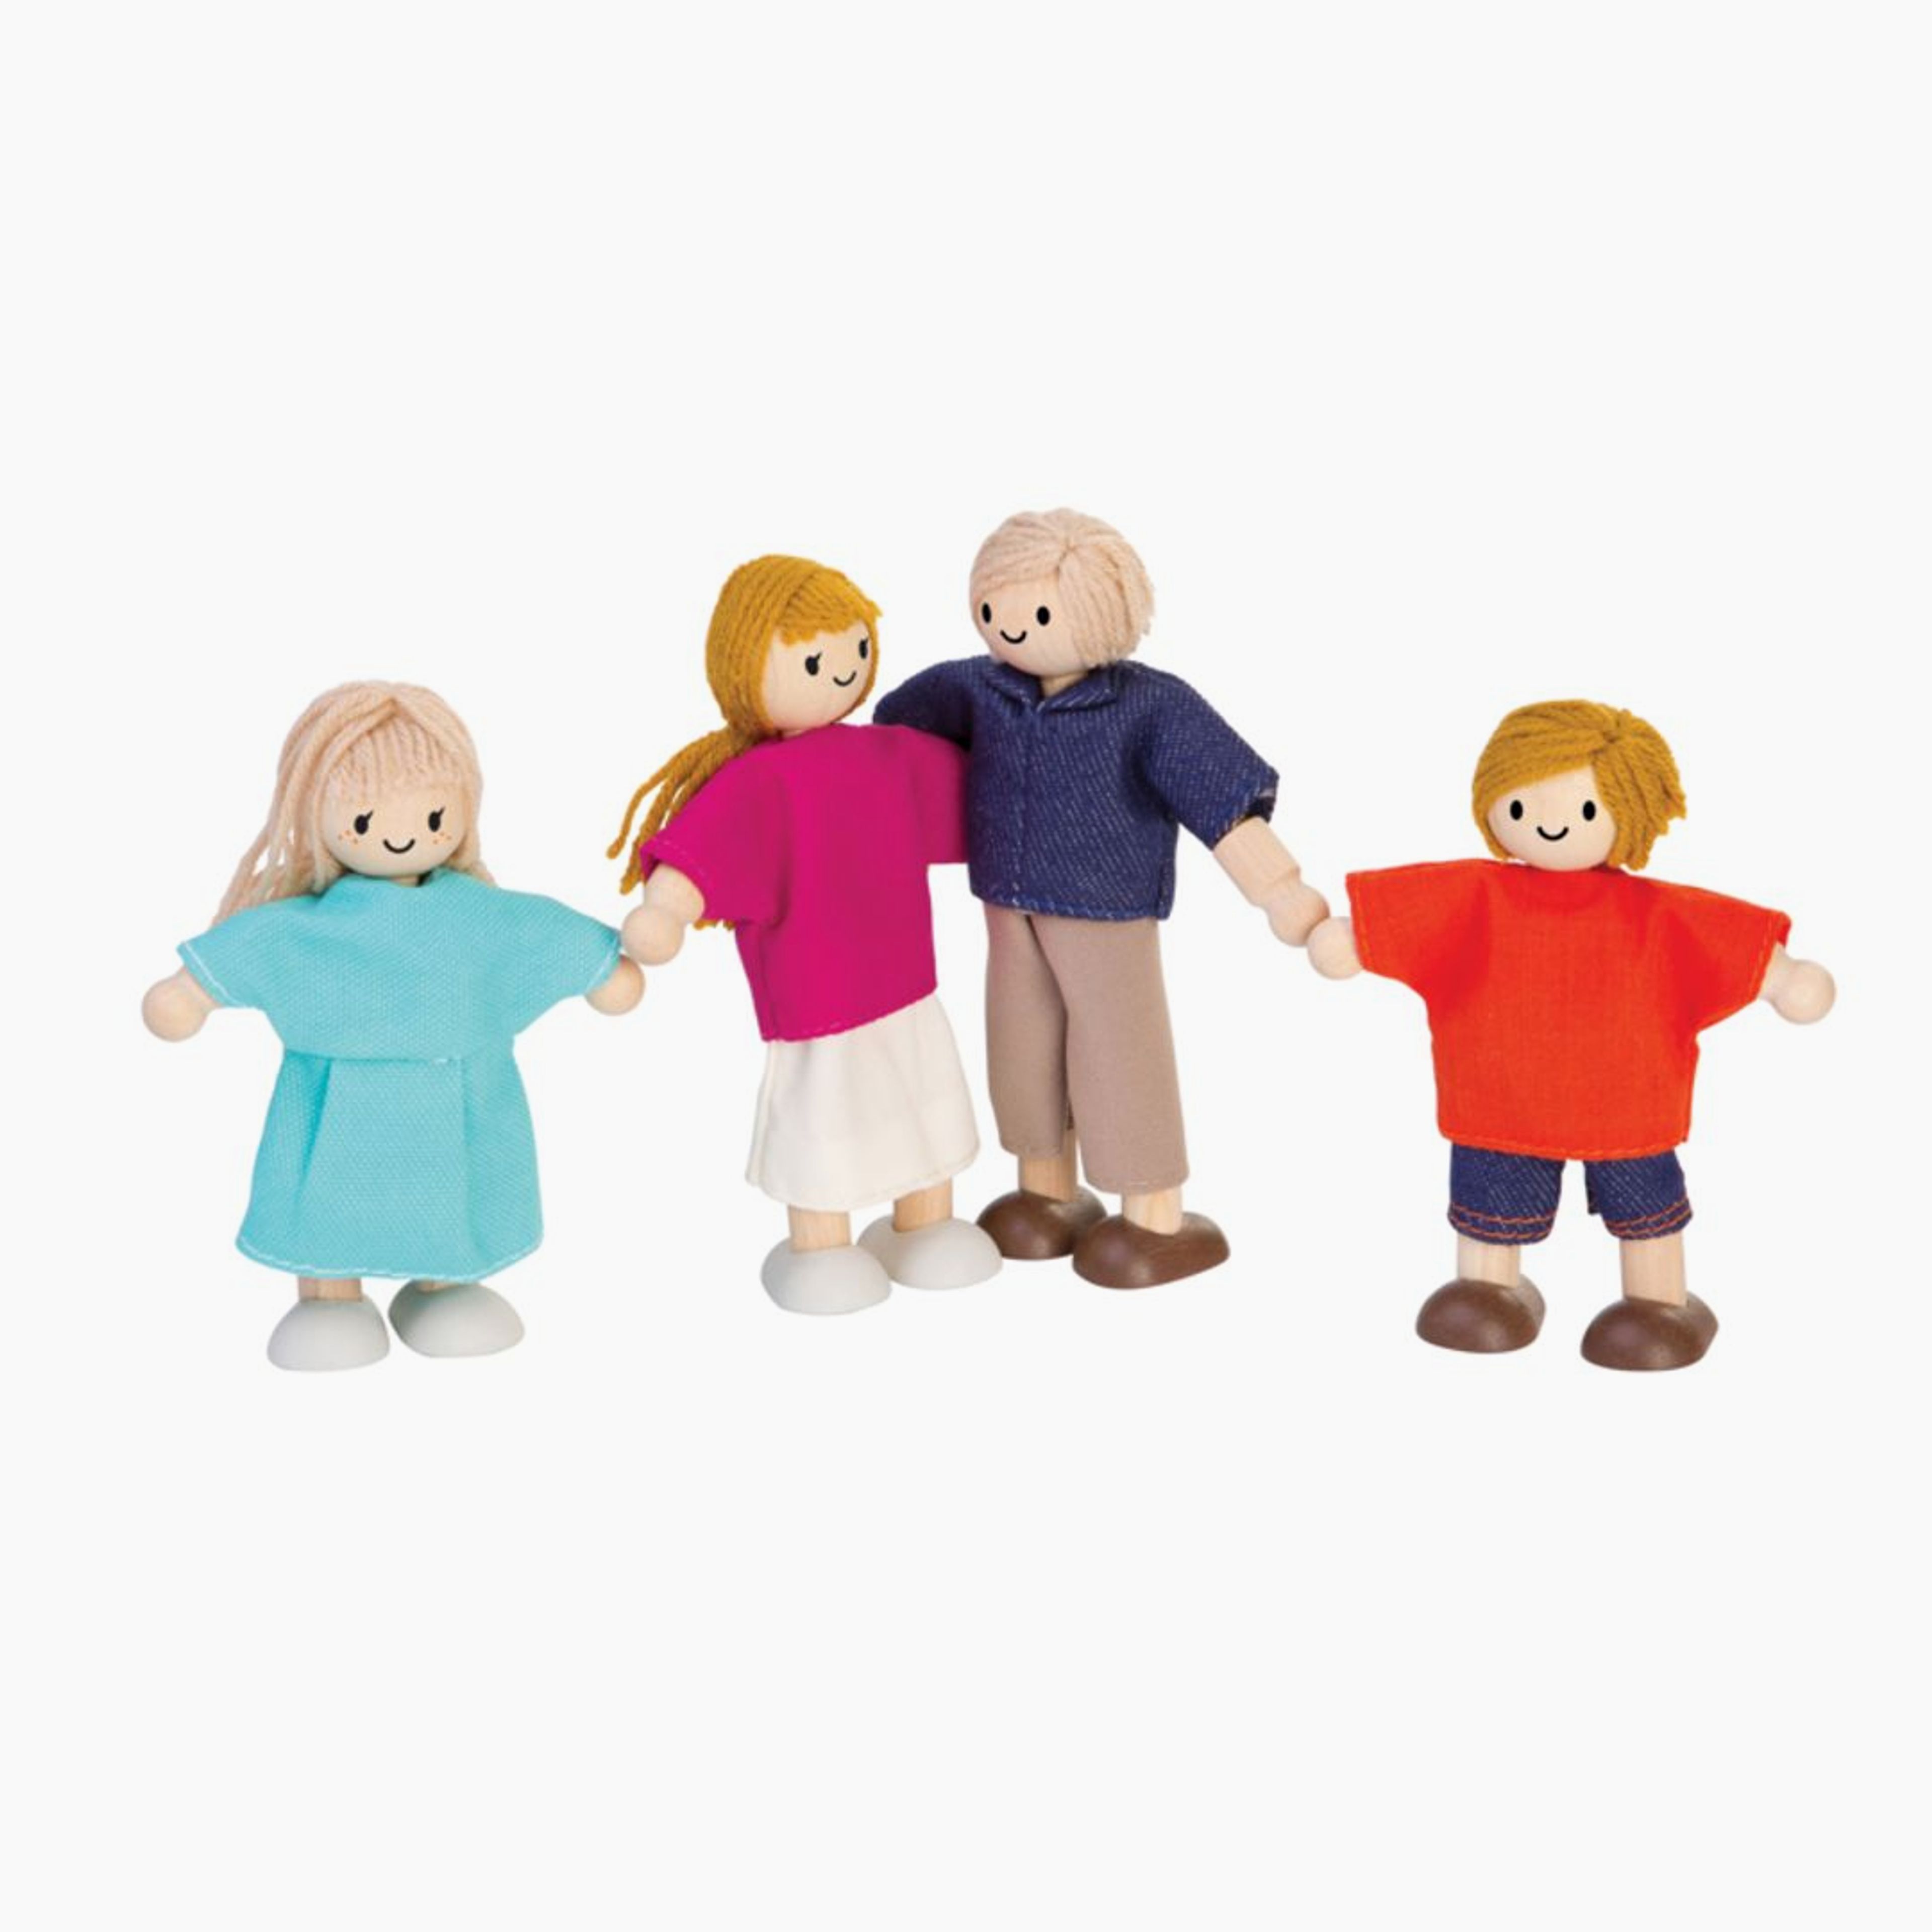 Doll Family - Light Skin Tone - Blonde Hair